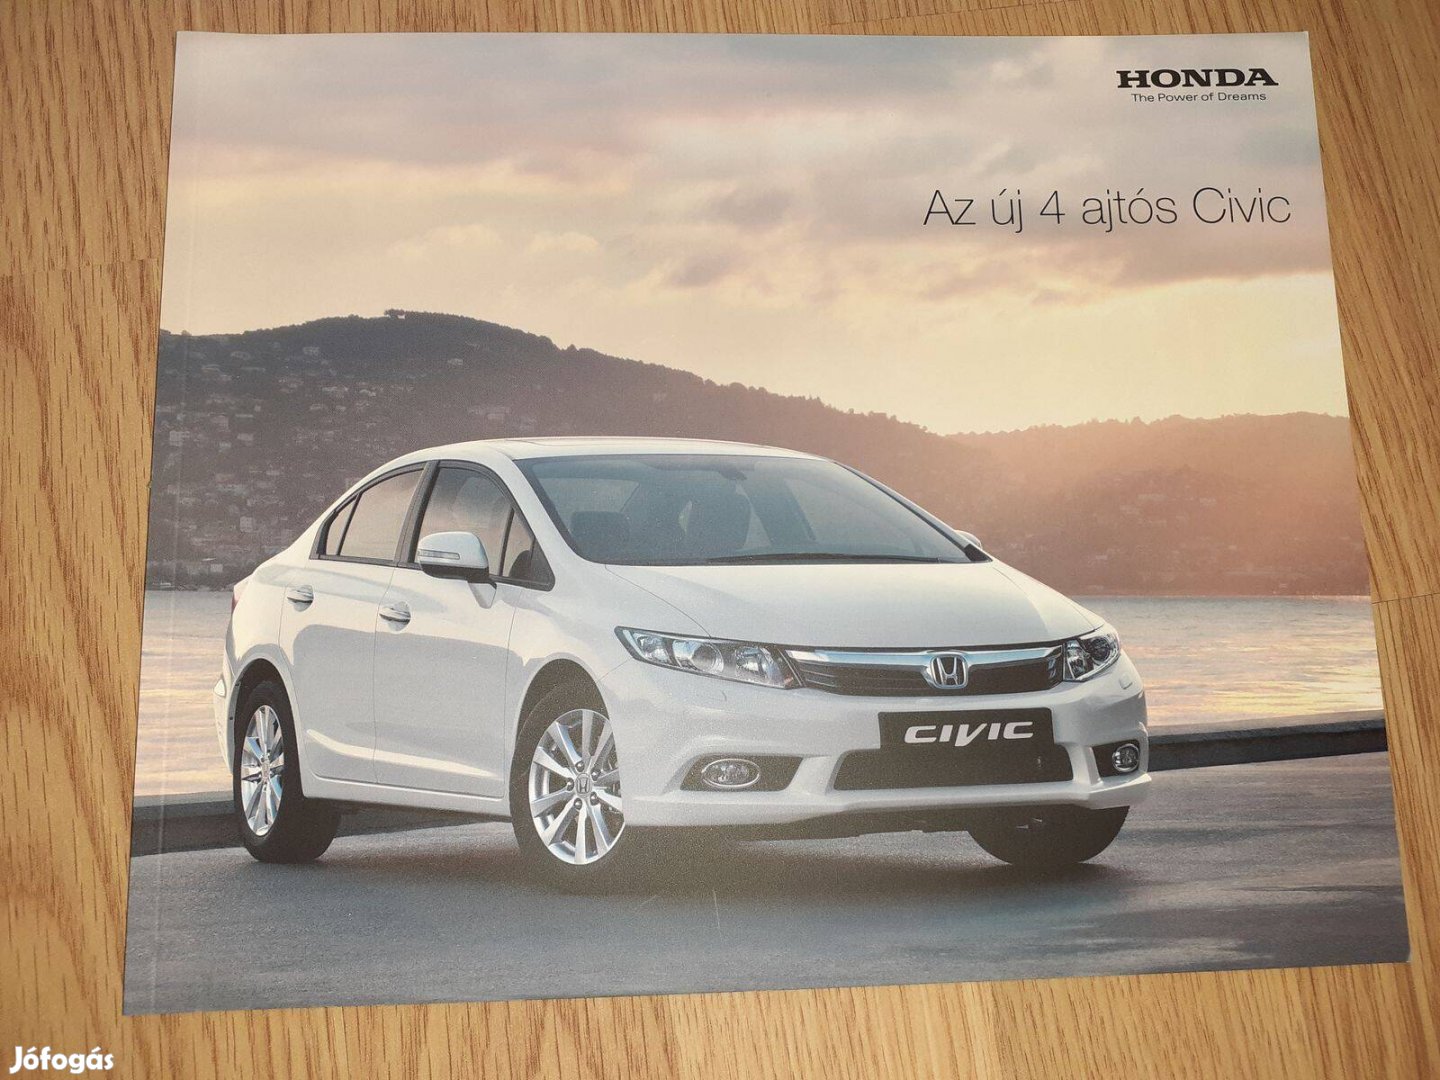 Honda Civic Sedan prospektus - 2012, magyar nyelvű